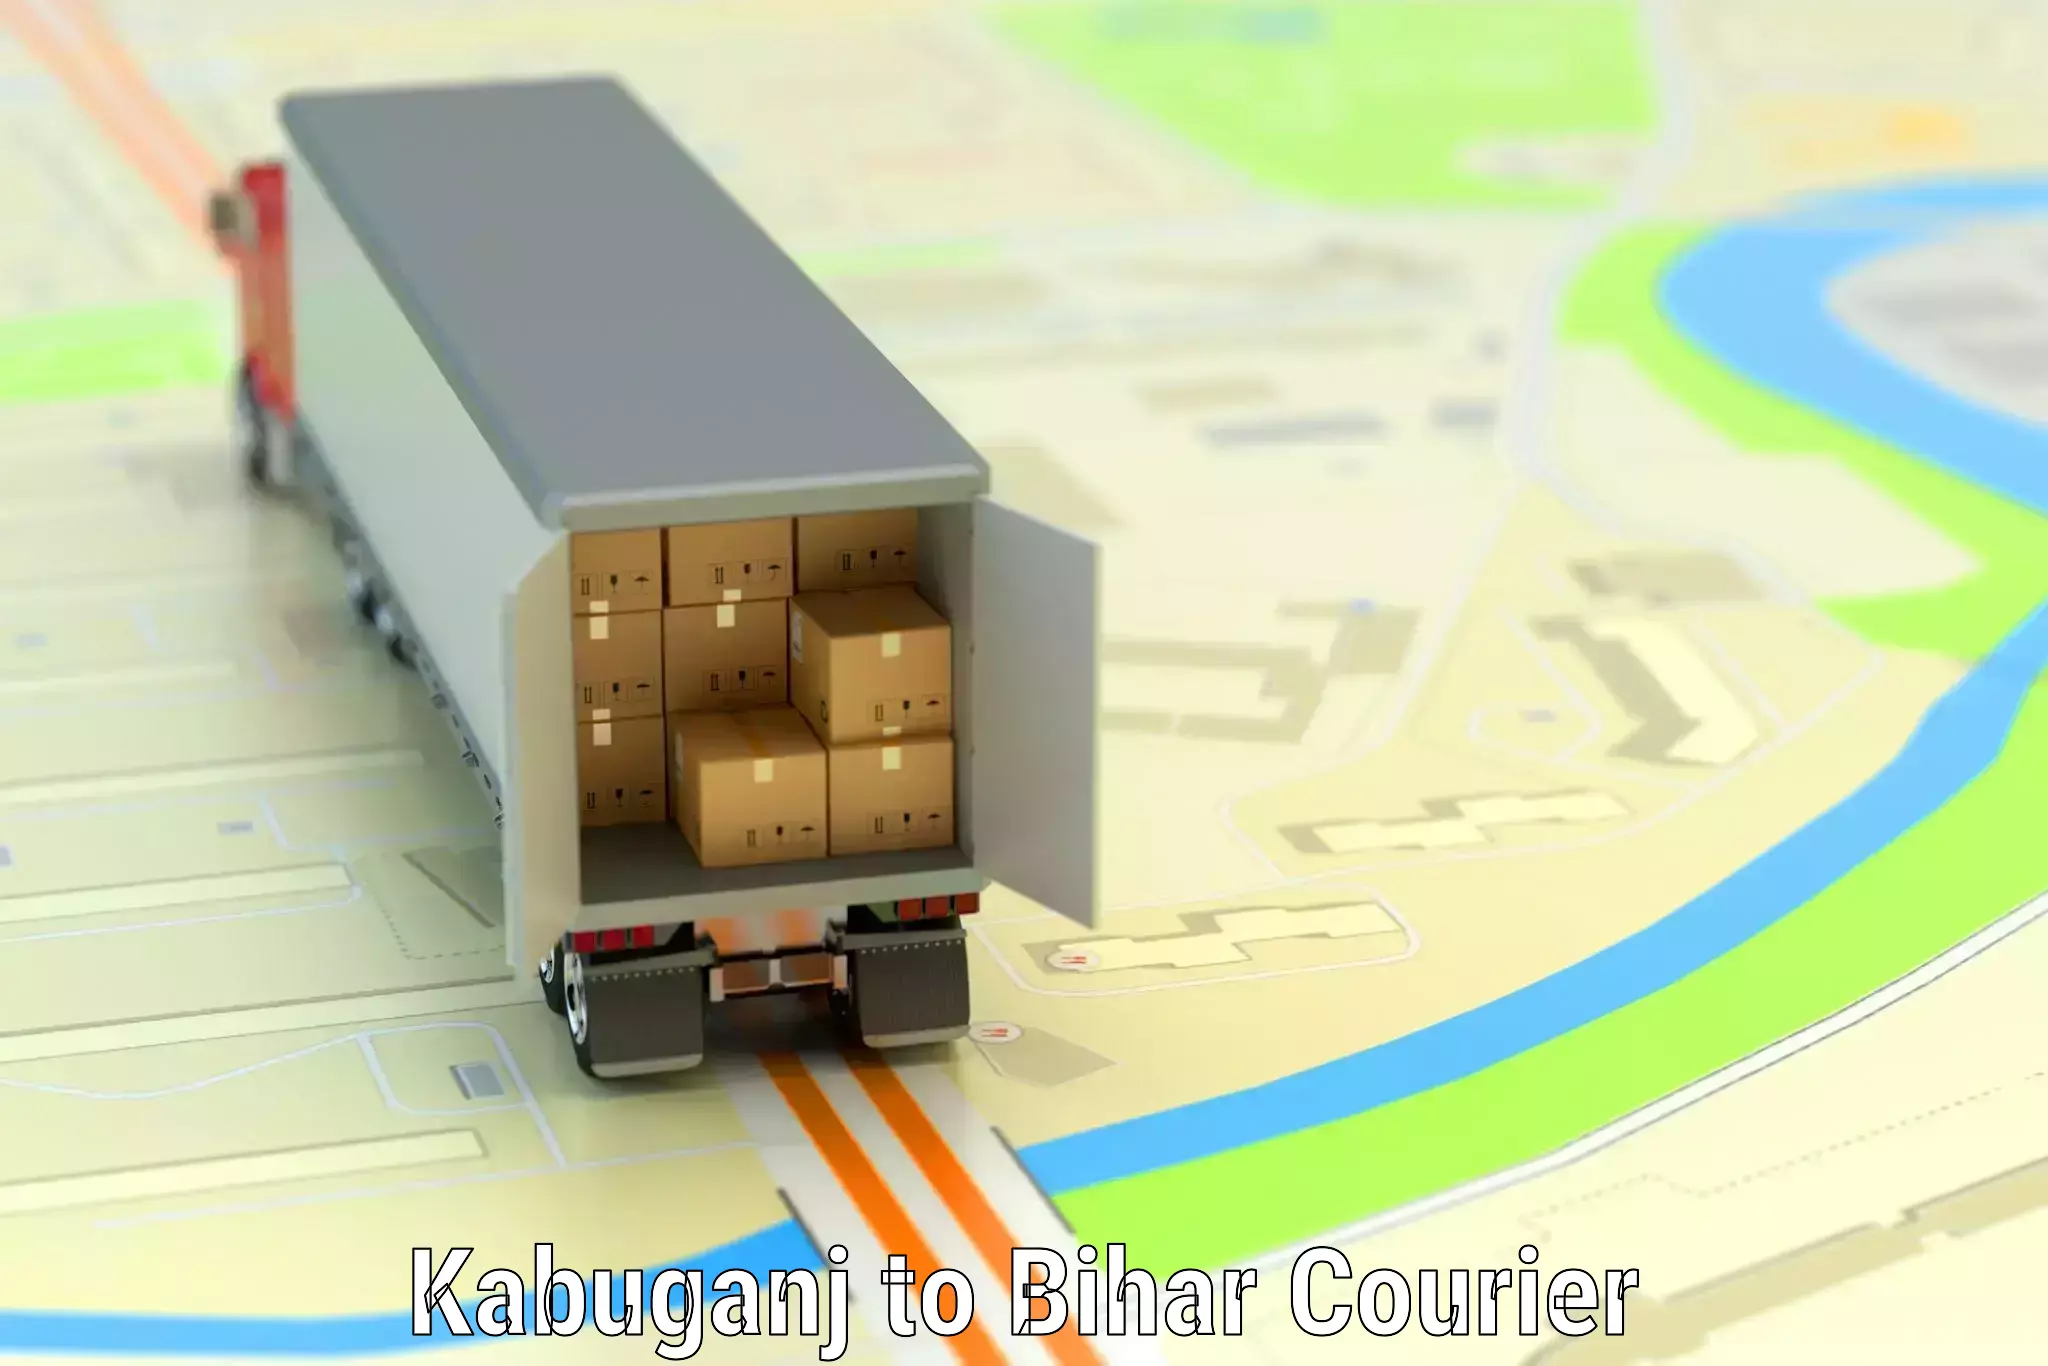 High-quality baggage shipment Kabuganj to Baisi